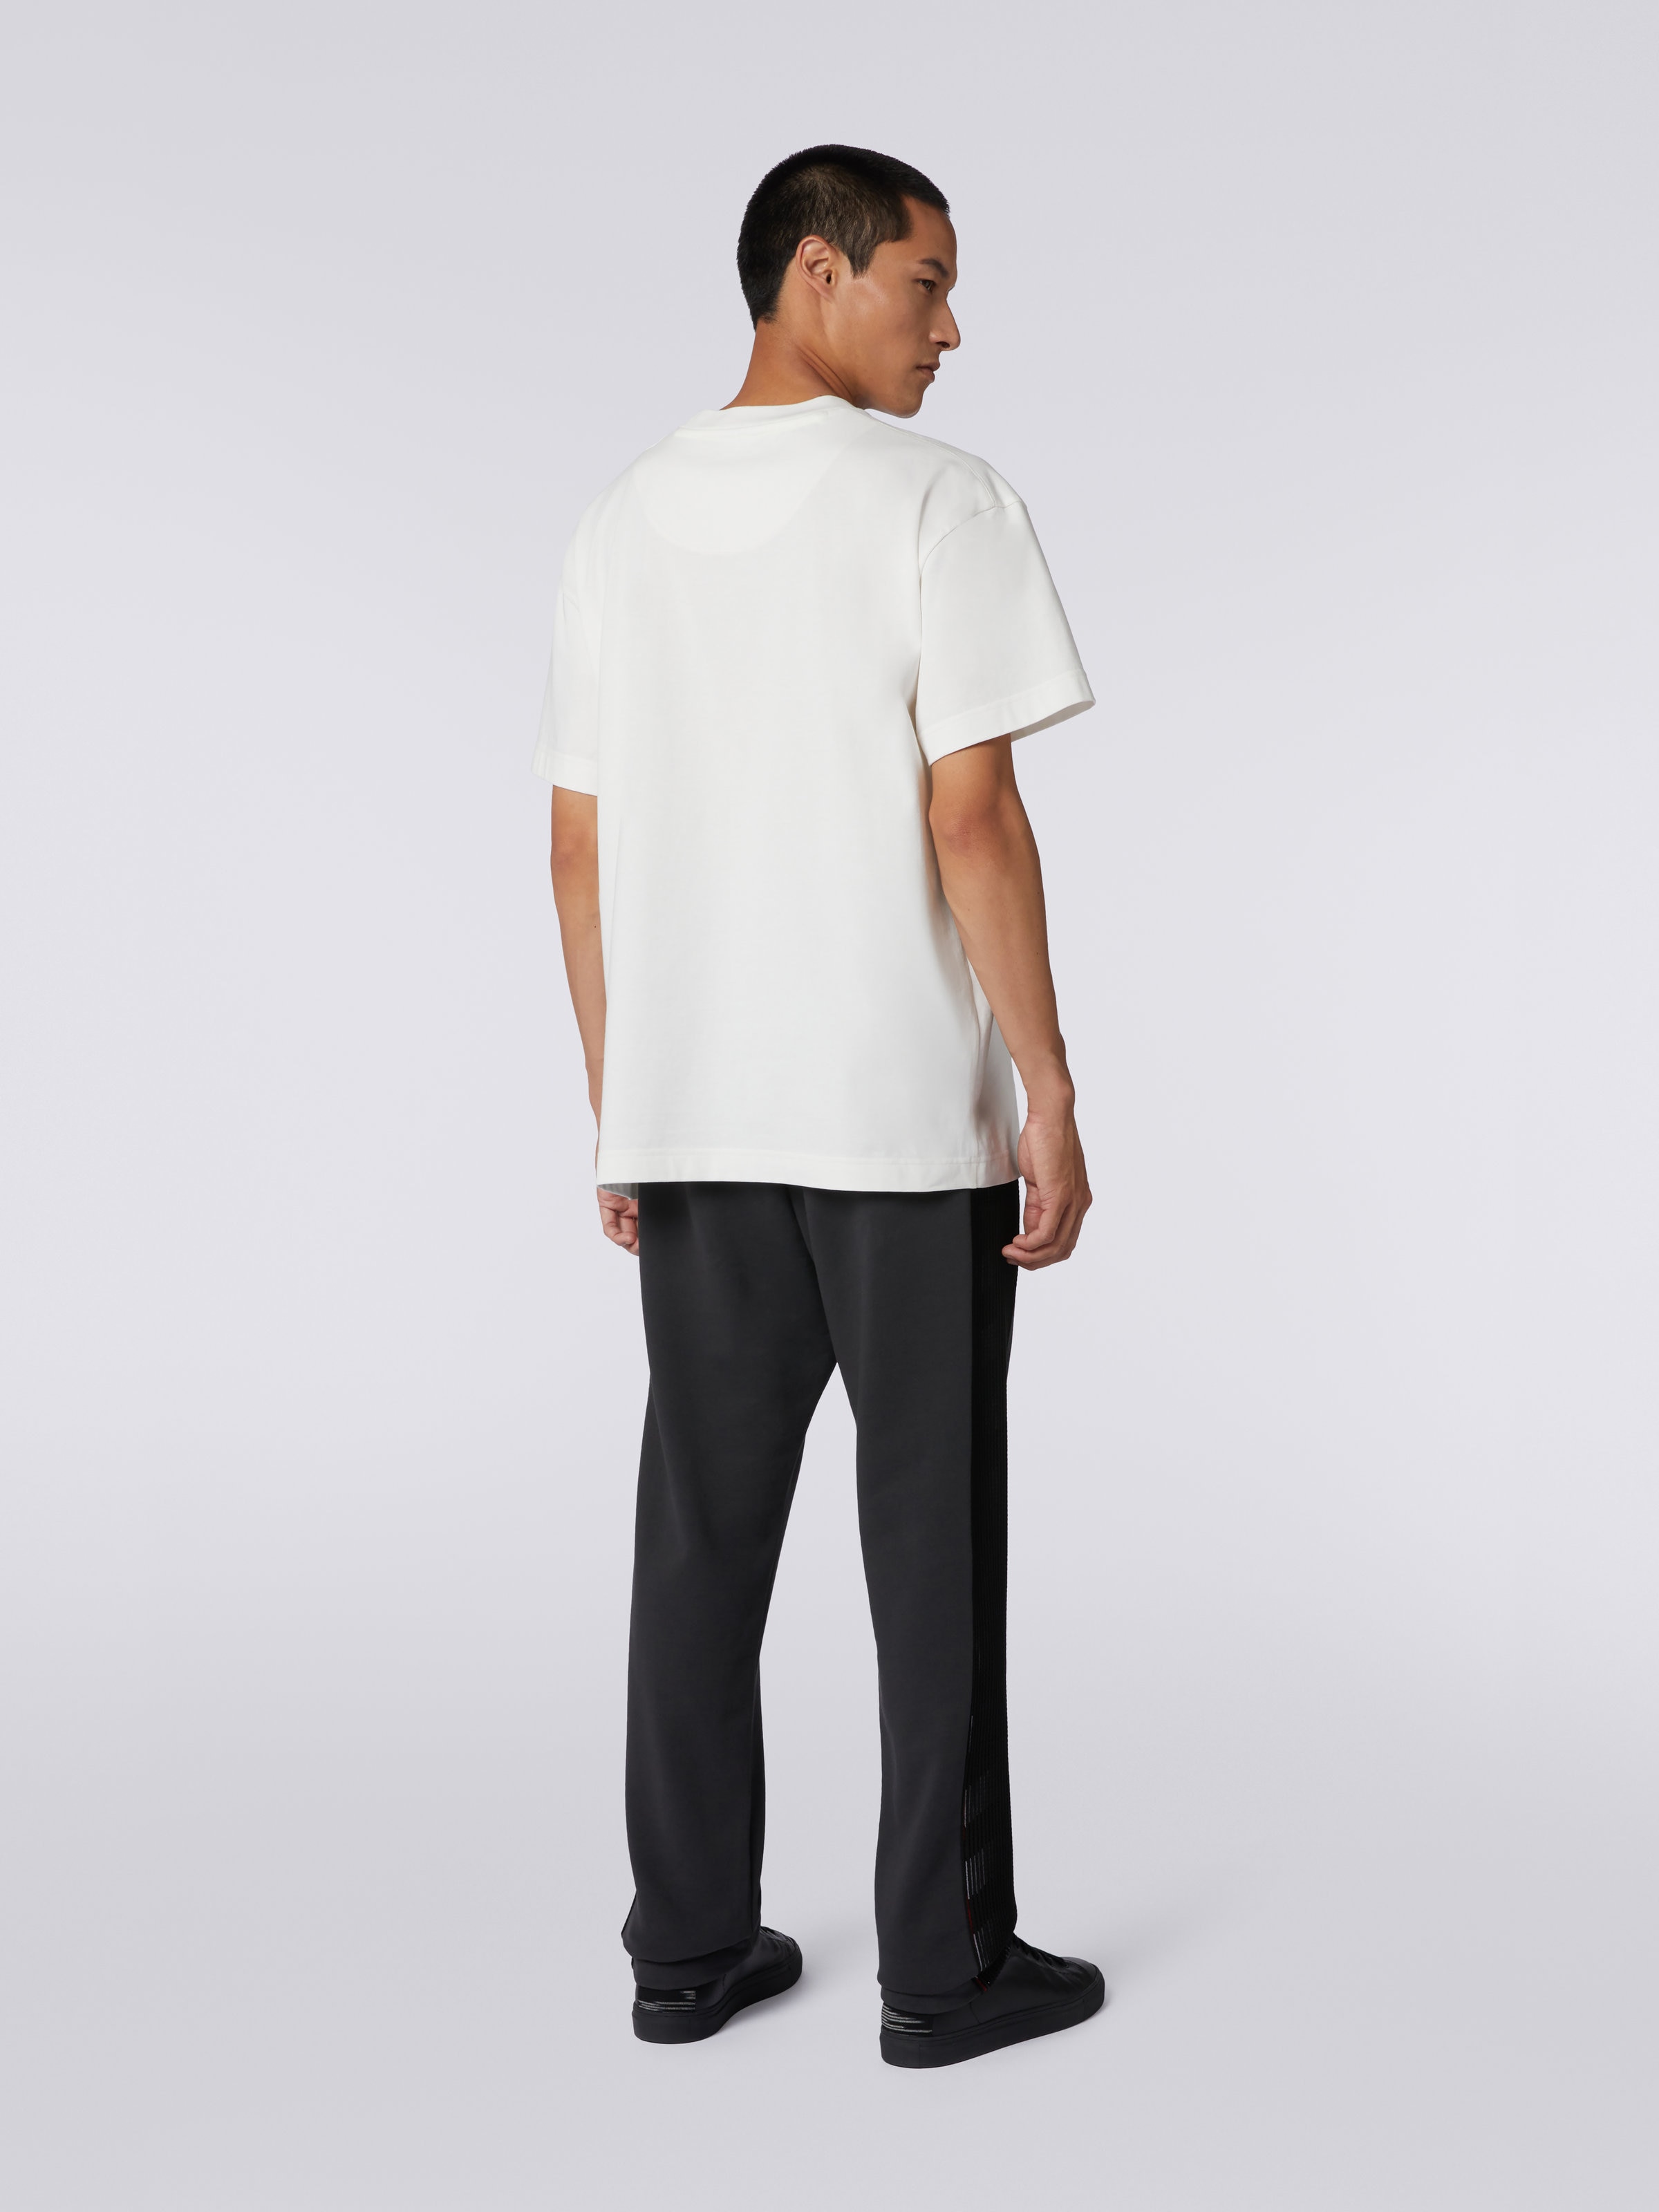 マイク・メニャンとのコラボレーションによるTシャツ ラウンドネック コットン ロゴ入り, ホワイト - 3